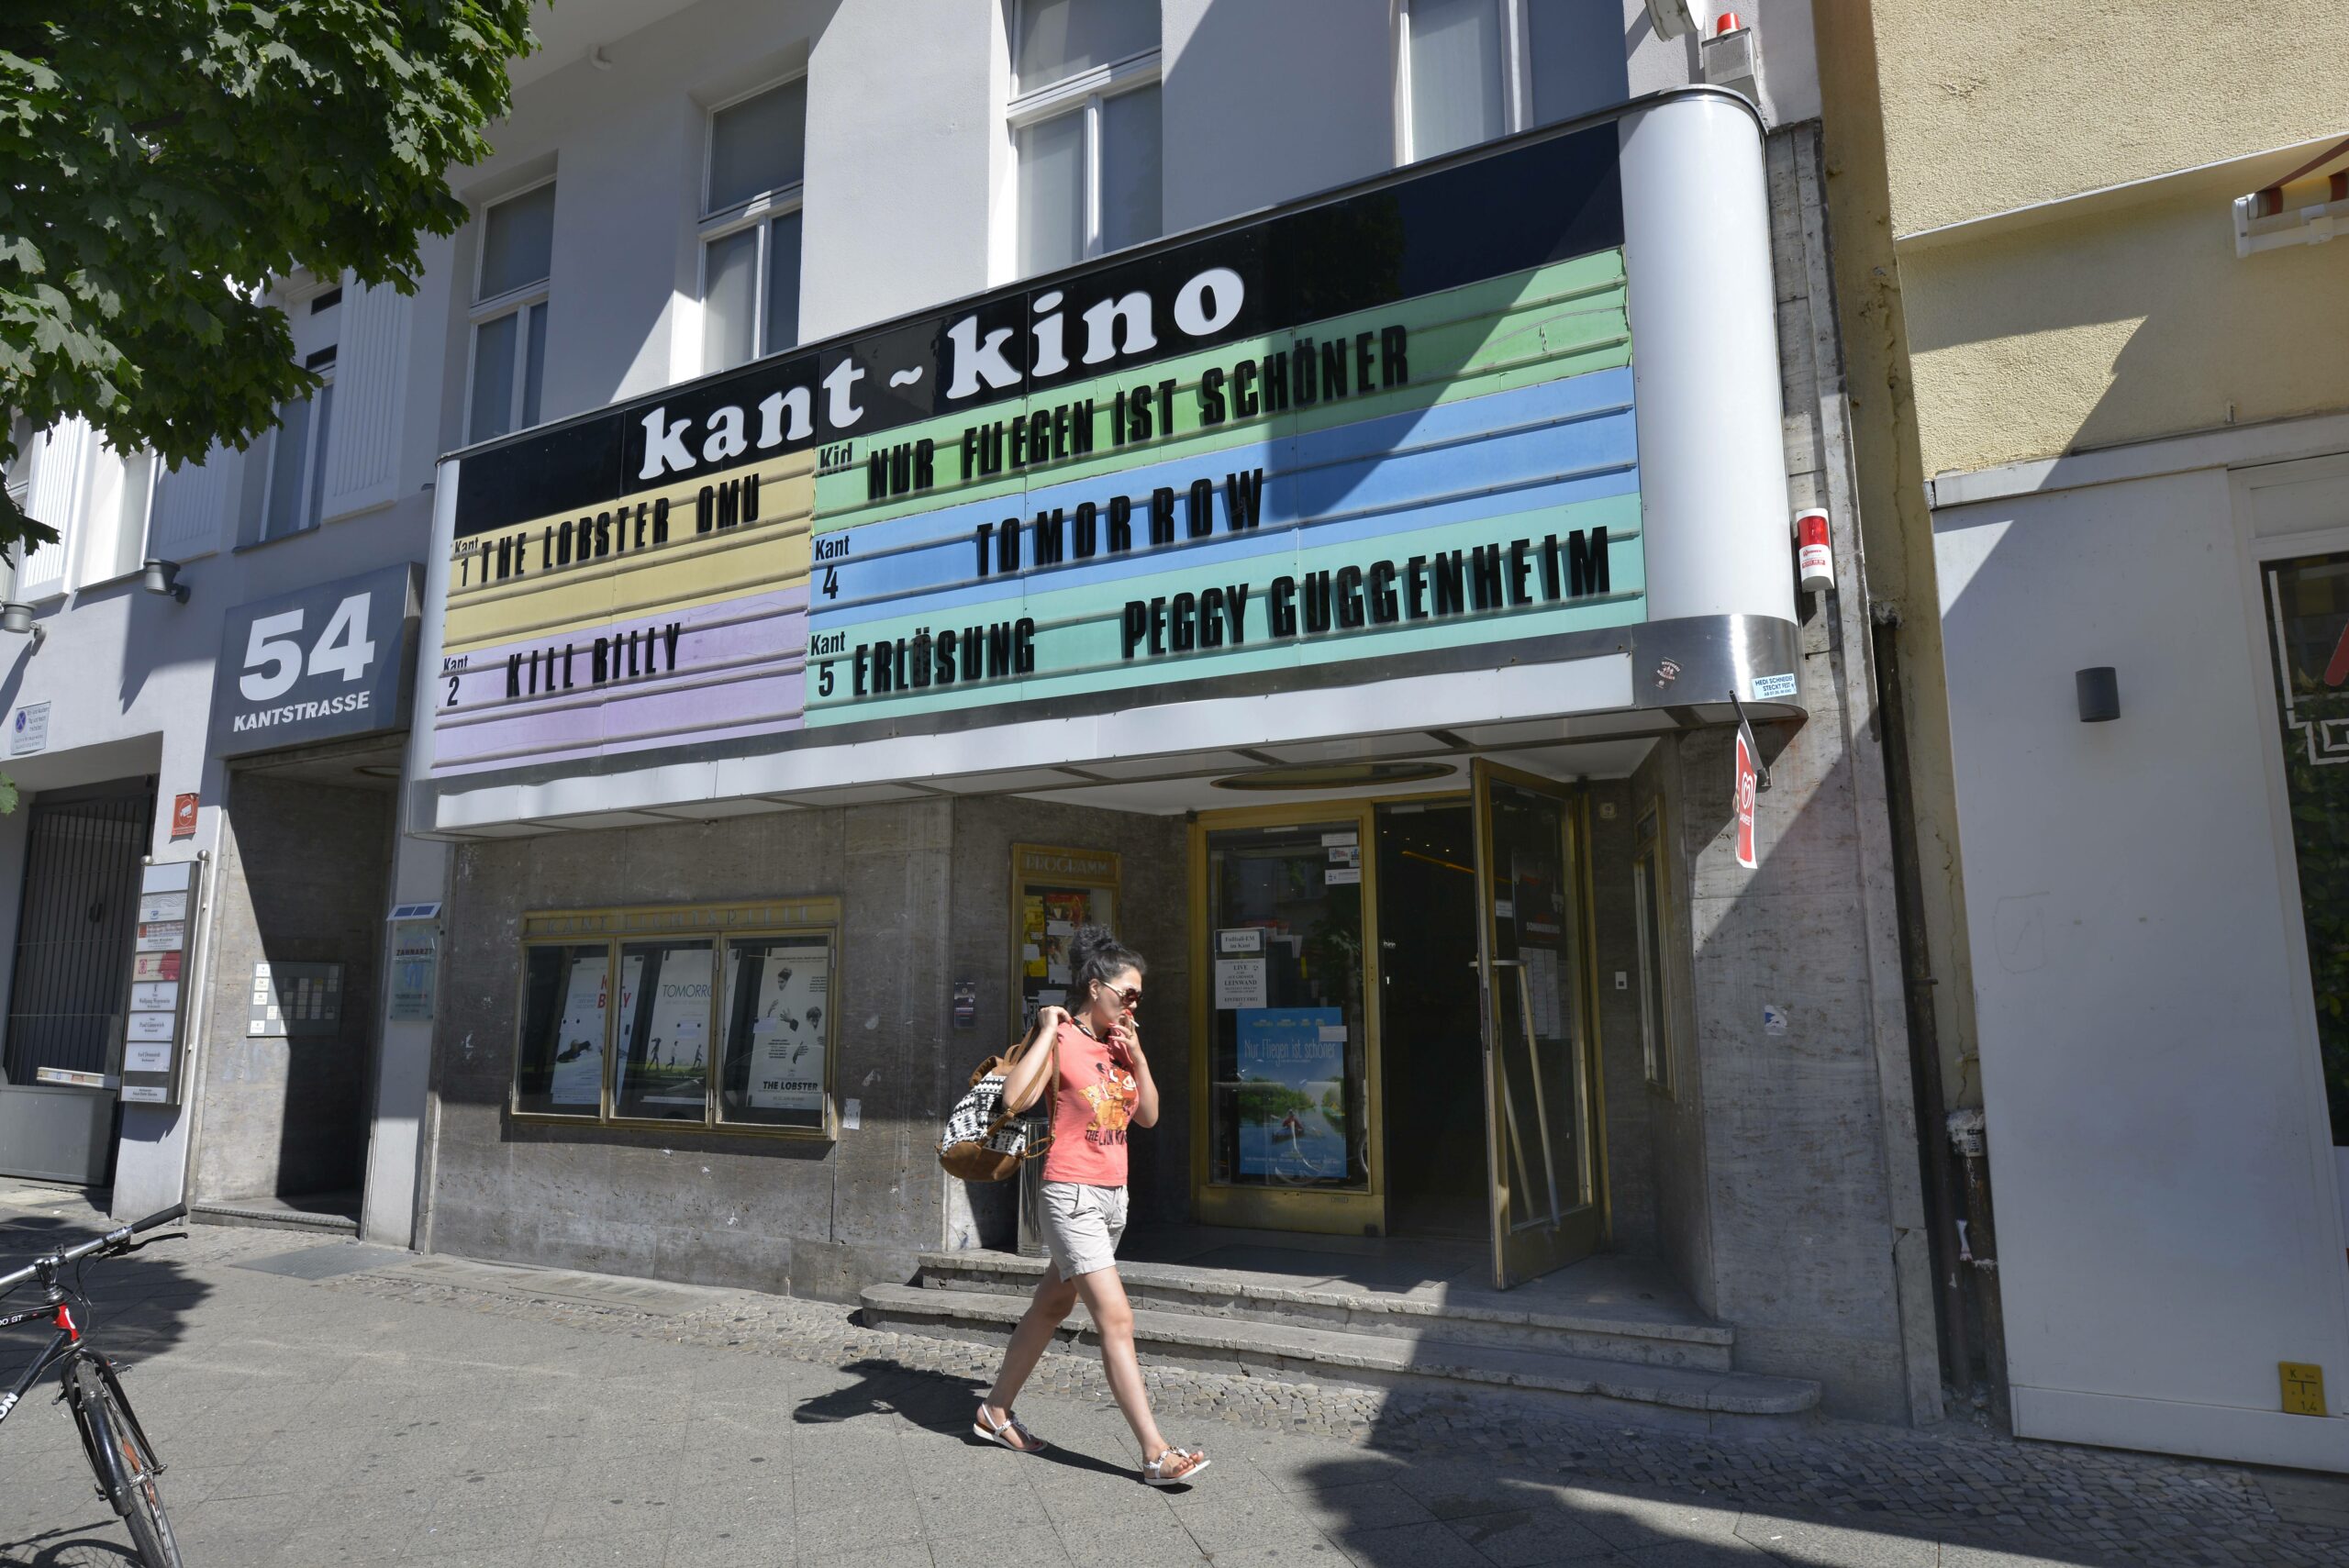 Das Kant-Kino in der Kantstraße, Charlottenburg. Foto: Imago/Schöning